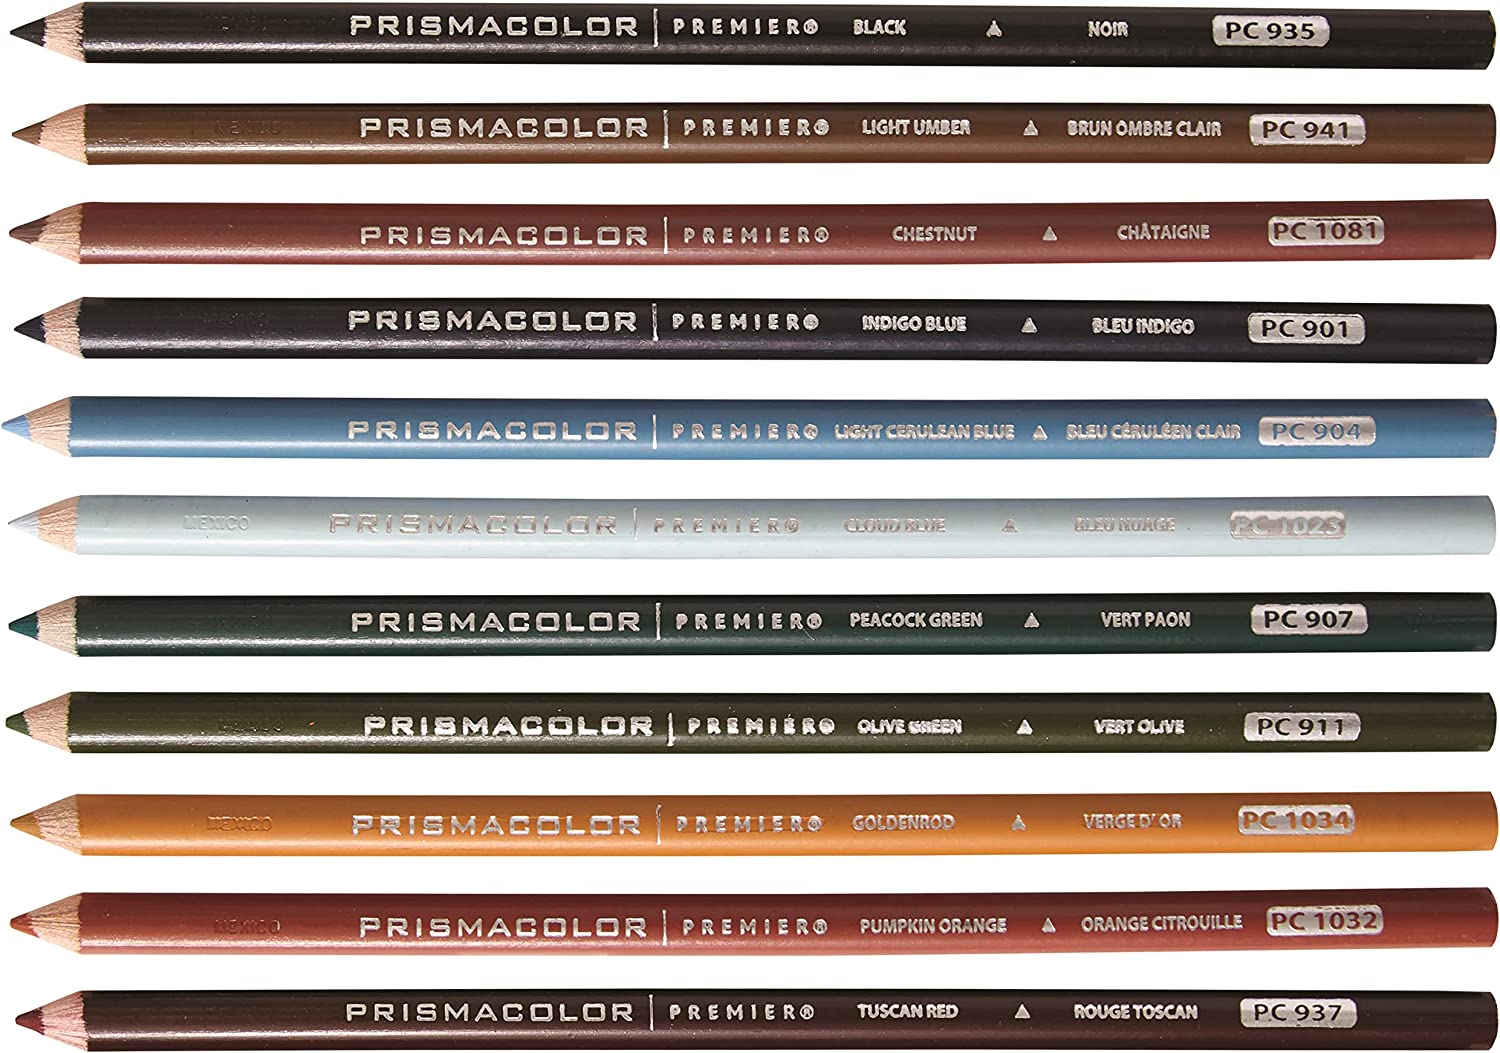 مداد رنگی 150 رنگ پریسماکالر مدل Prismacolor Premier Soft Core Color - ارسال 15 الی 20 روز کاری